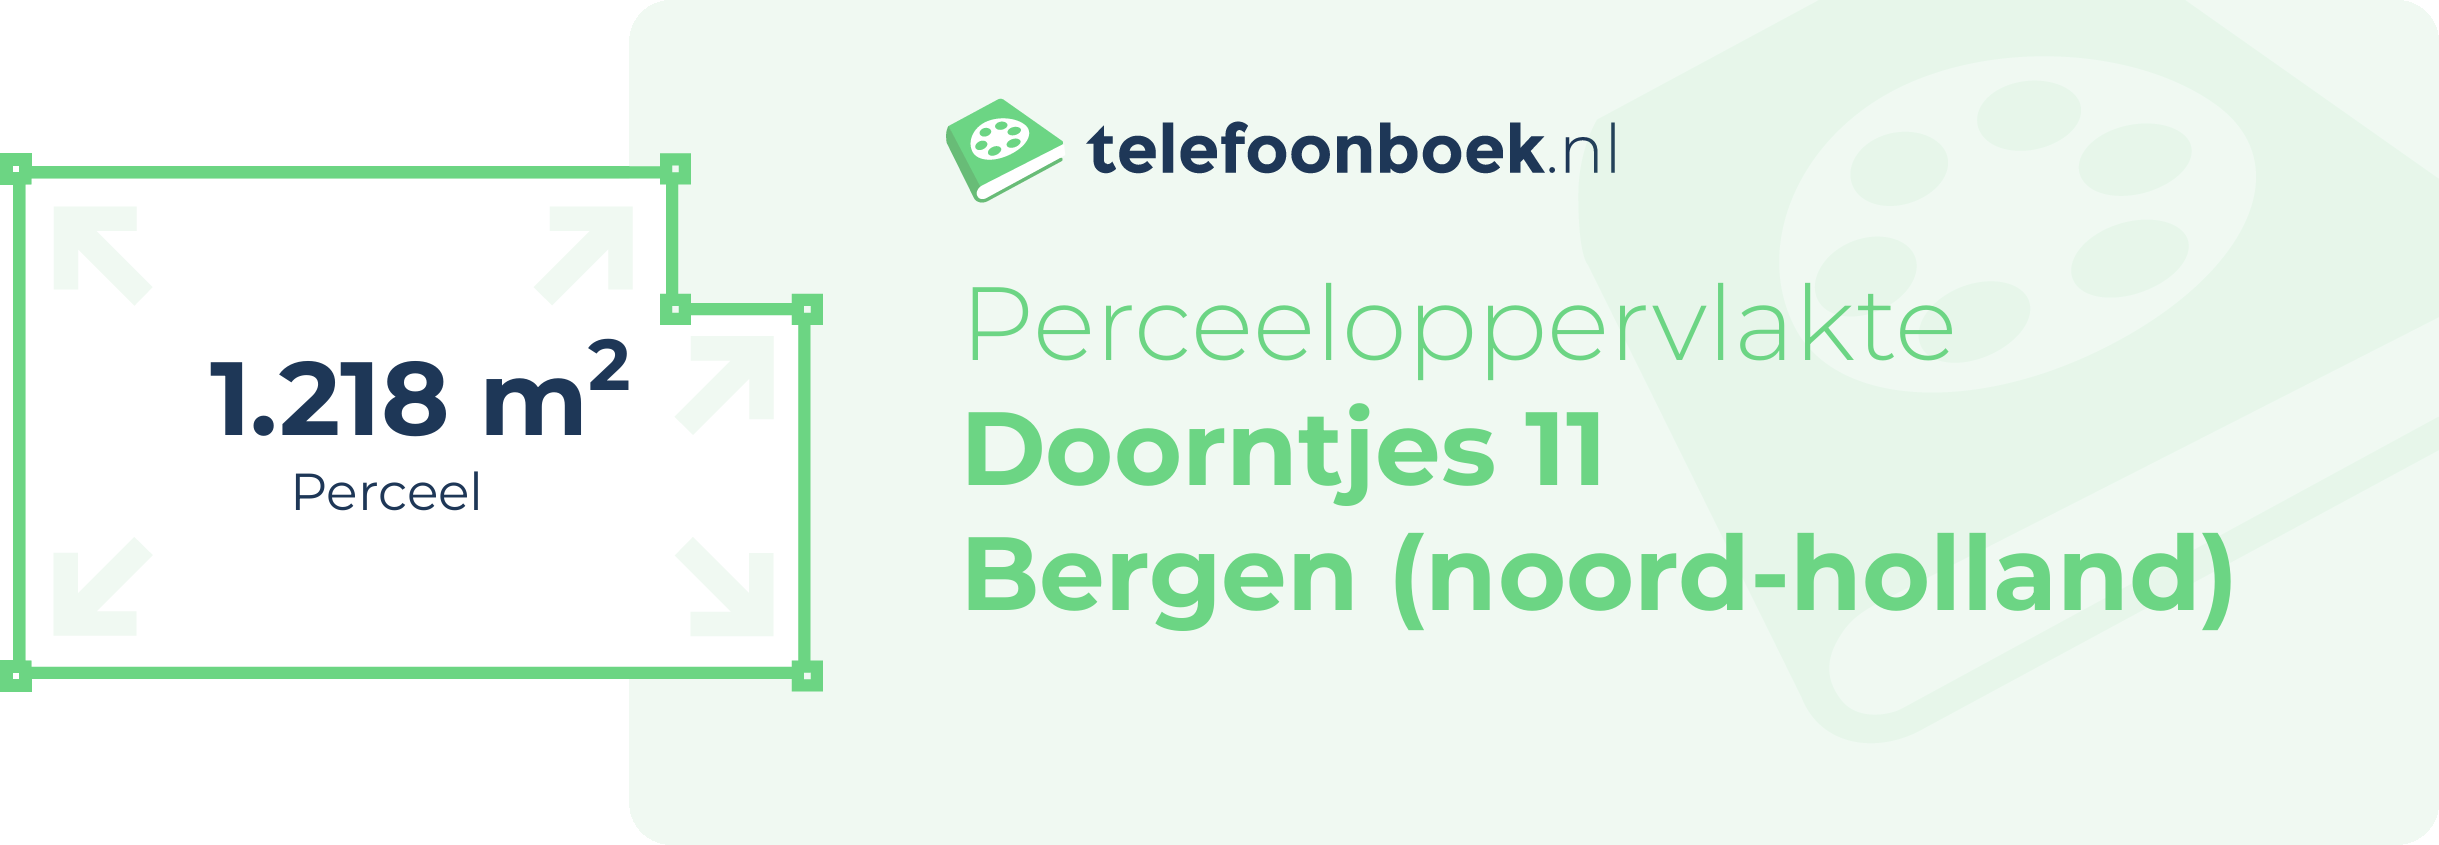 Perceeloppervlakte Doorntjes 11 Bergen (Noord-Holland)